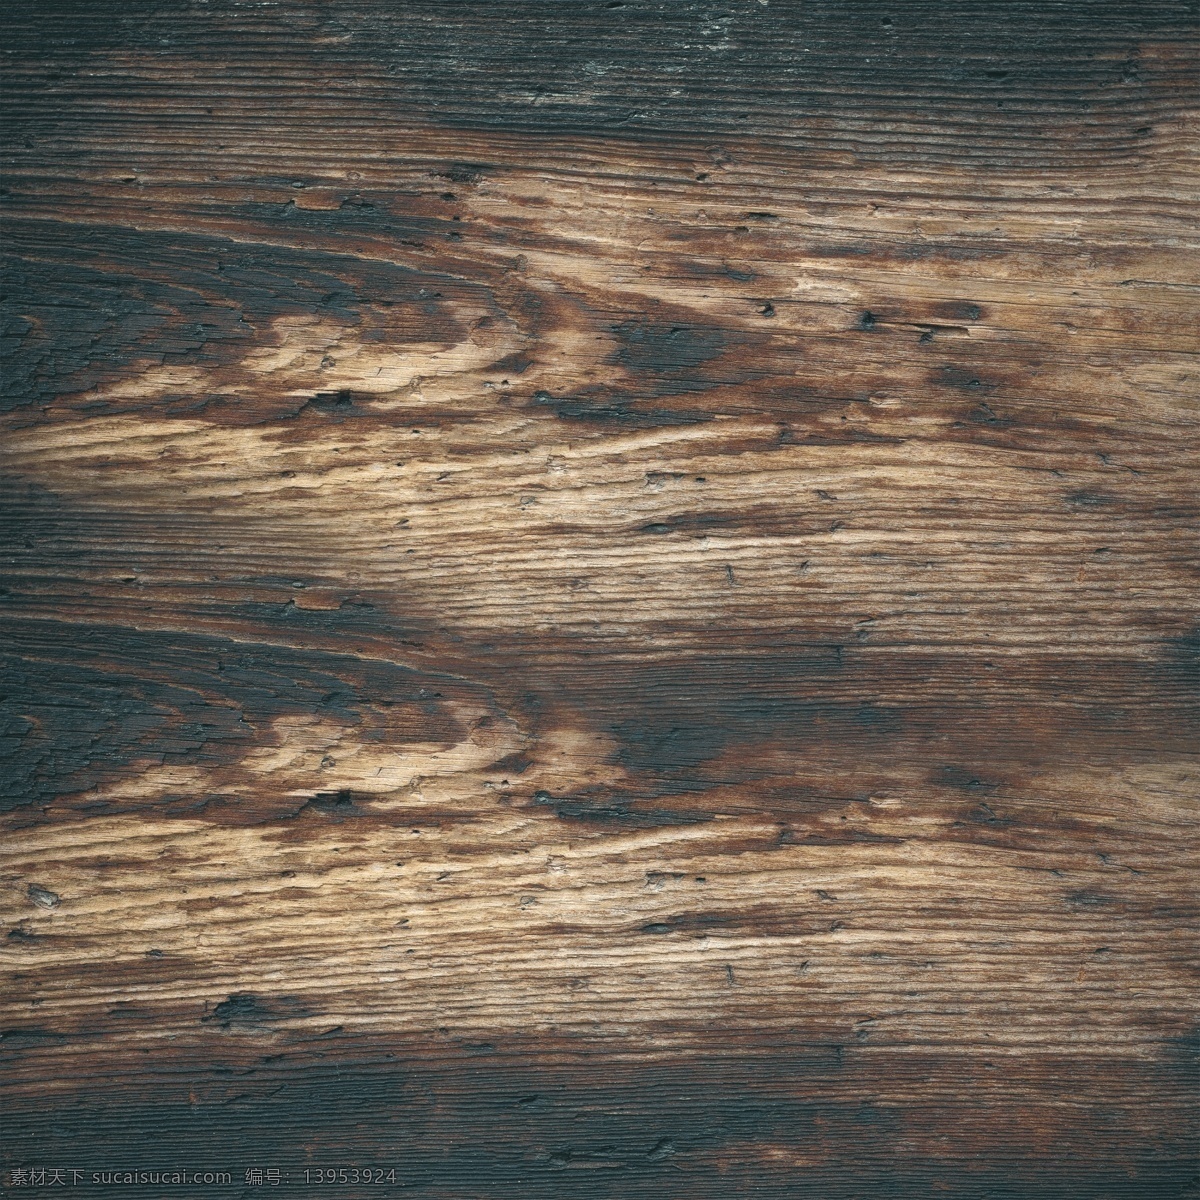 木纹 木板背景 木纹背景 纹路 木质 木板 材质 纹理 木制 高清 tiff 桌面 壁纸 拍摄 摆拍 高清摄影 木板摄影 木纹摄影 生物世界 树木树叶